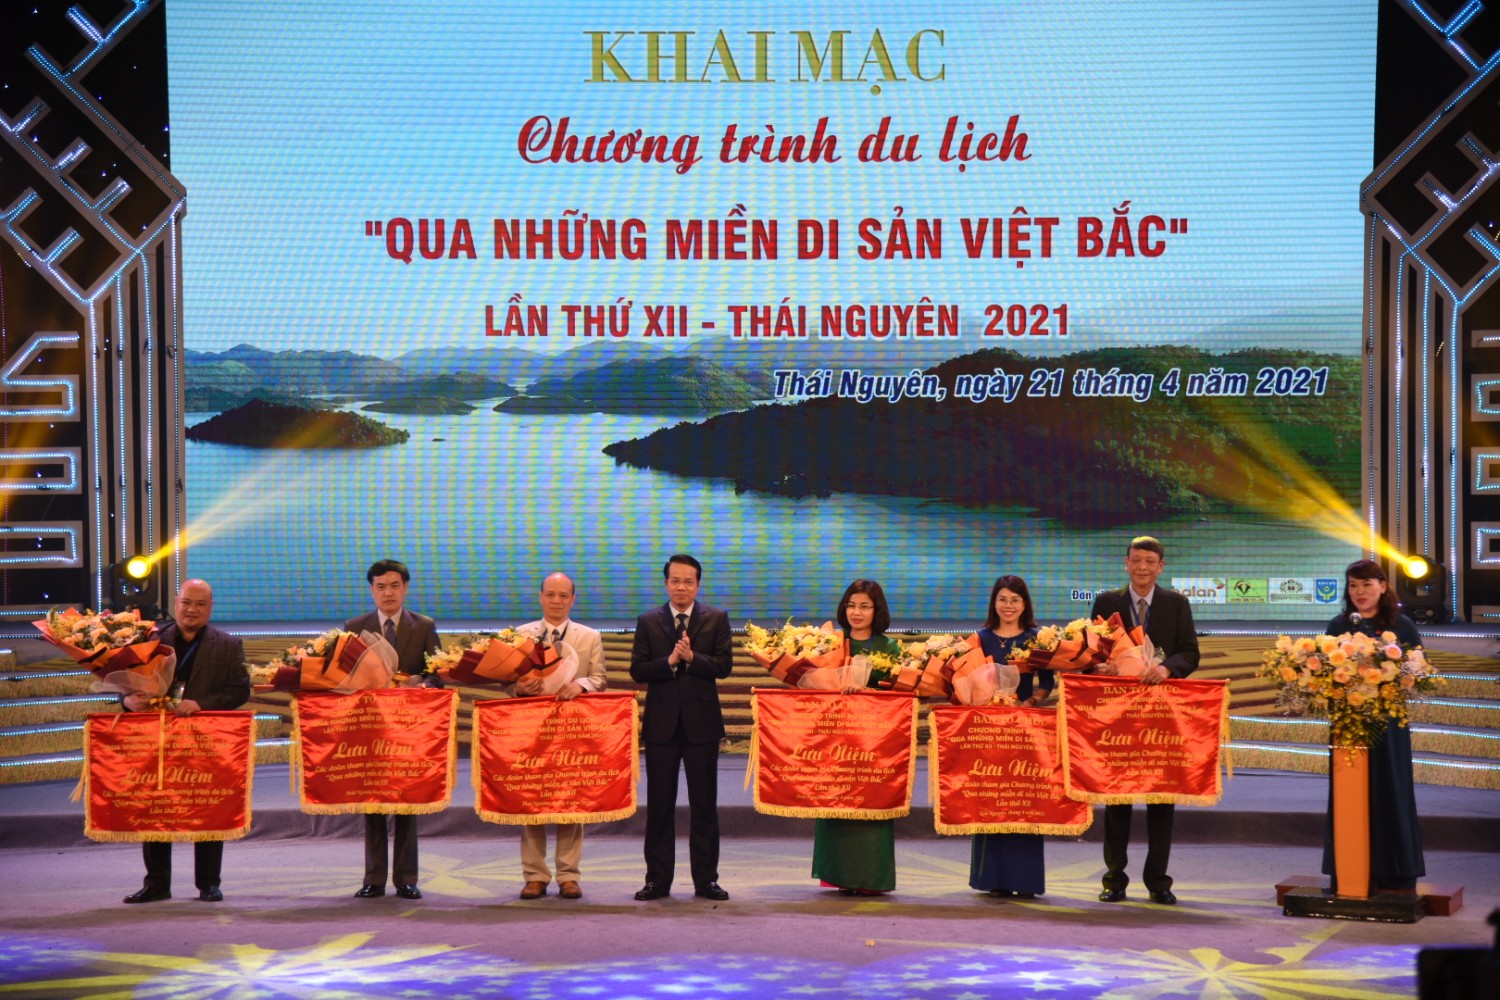 Chương trình du lịch “ Qua những miền di sản Việt Bắc” lần thứ XIII - Hà Giang 2022 với điểm nhấn là Tuần văn hóa du lịch và giới thiệu sản phẩm đặc trưng 6 tỉnh Việt Bắc với Hà Nội sẽ diễn ra vào trung tuần tháng 4 tới